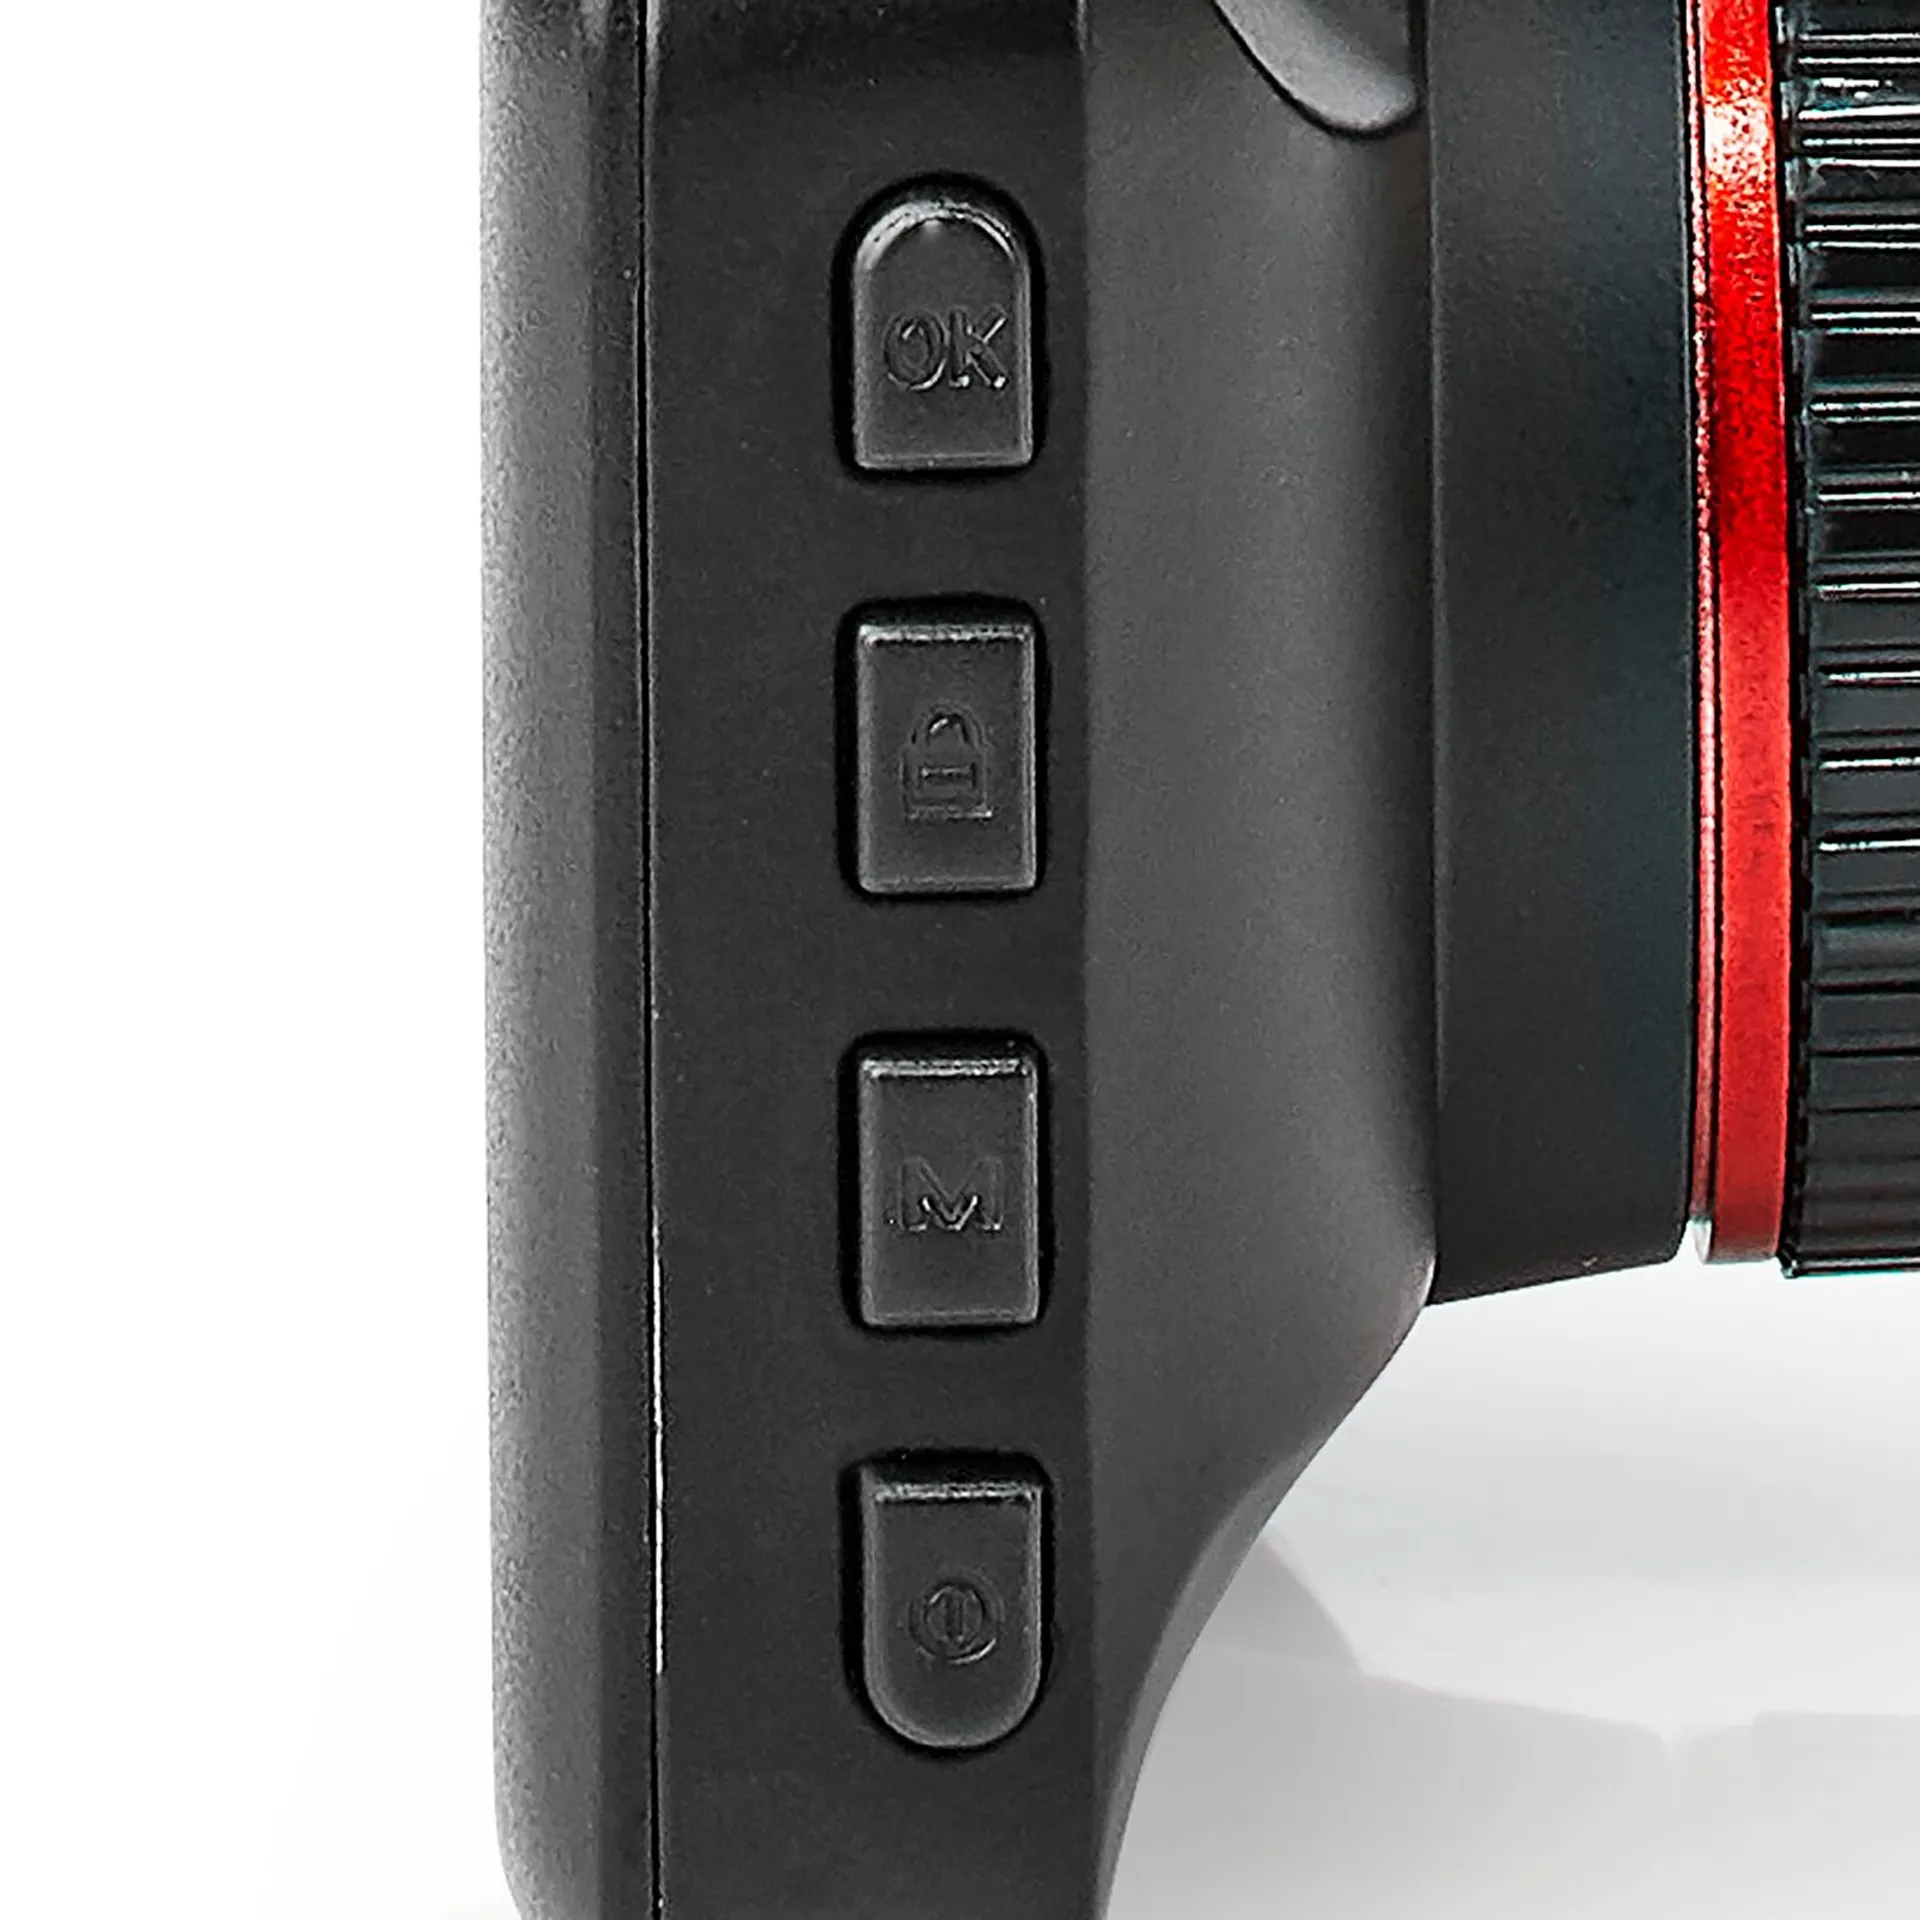 Nedis Autokamera DCAM15BK 1080p@30fps 12.0 MPixel 3.0 " LCD Musta/Punainen - 9